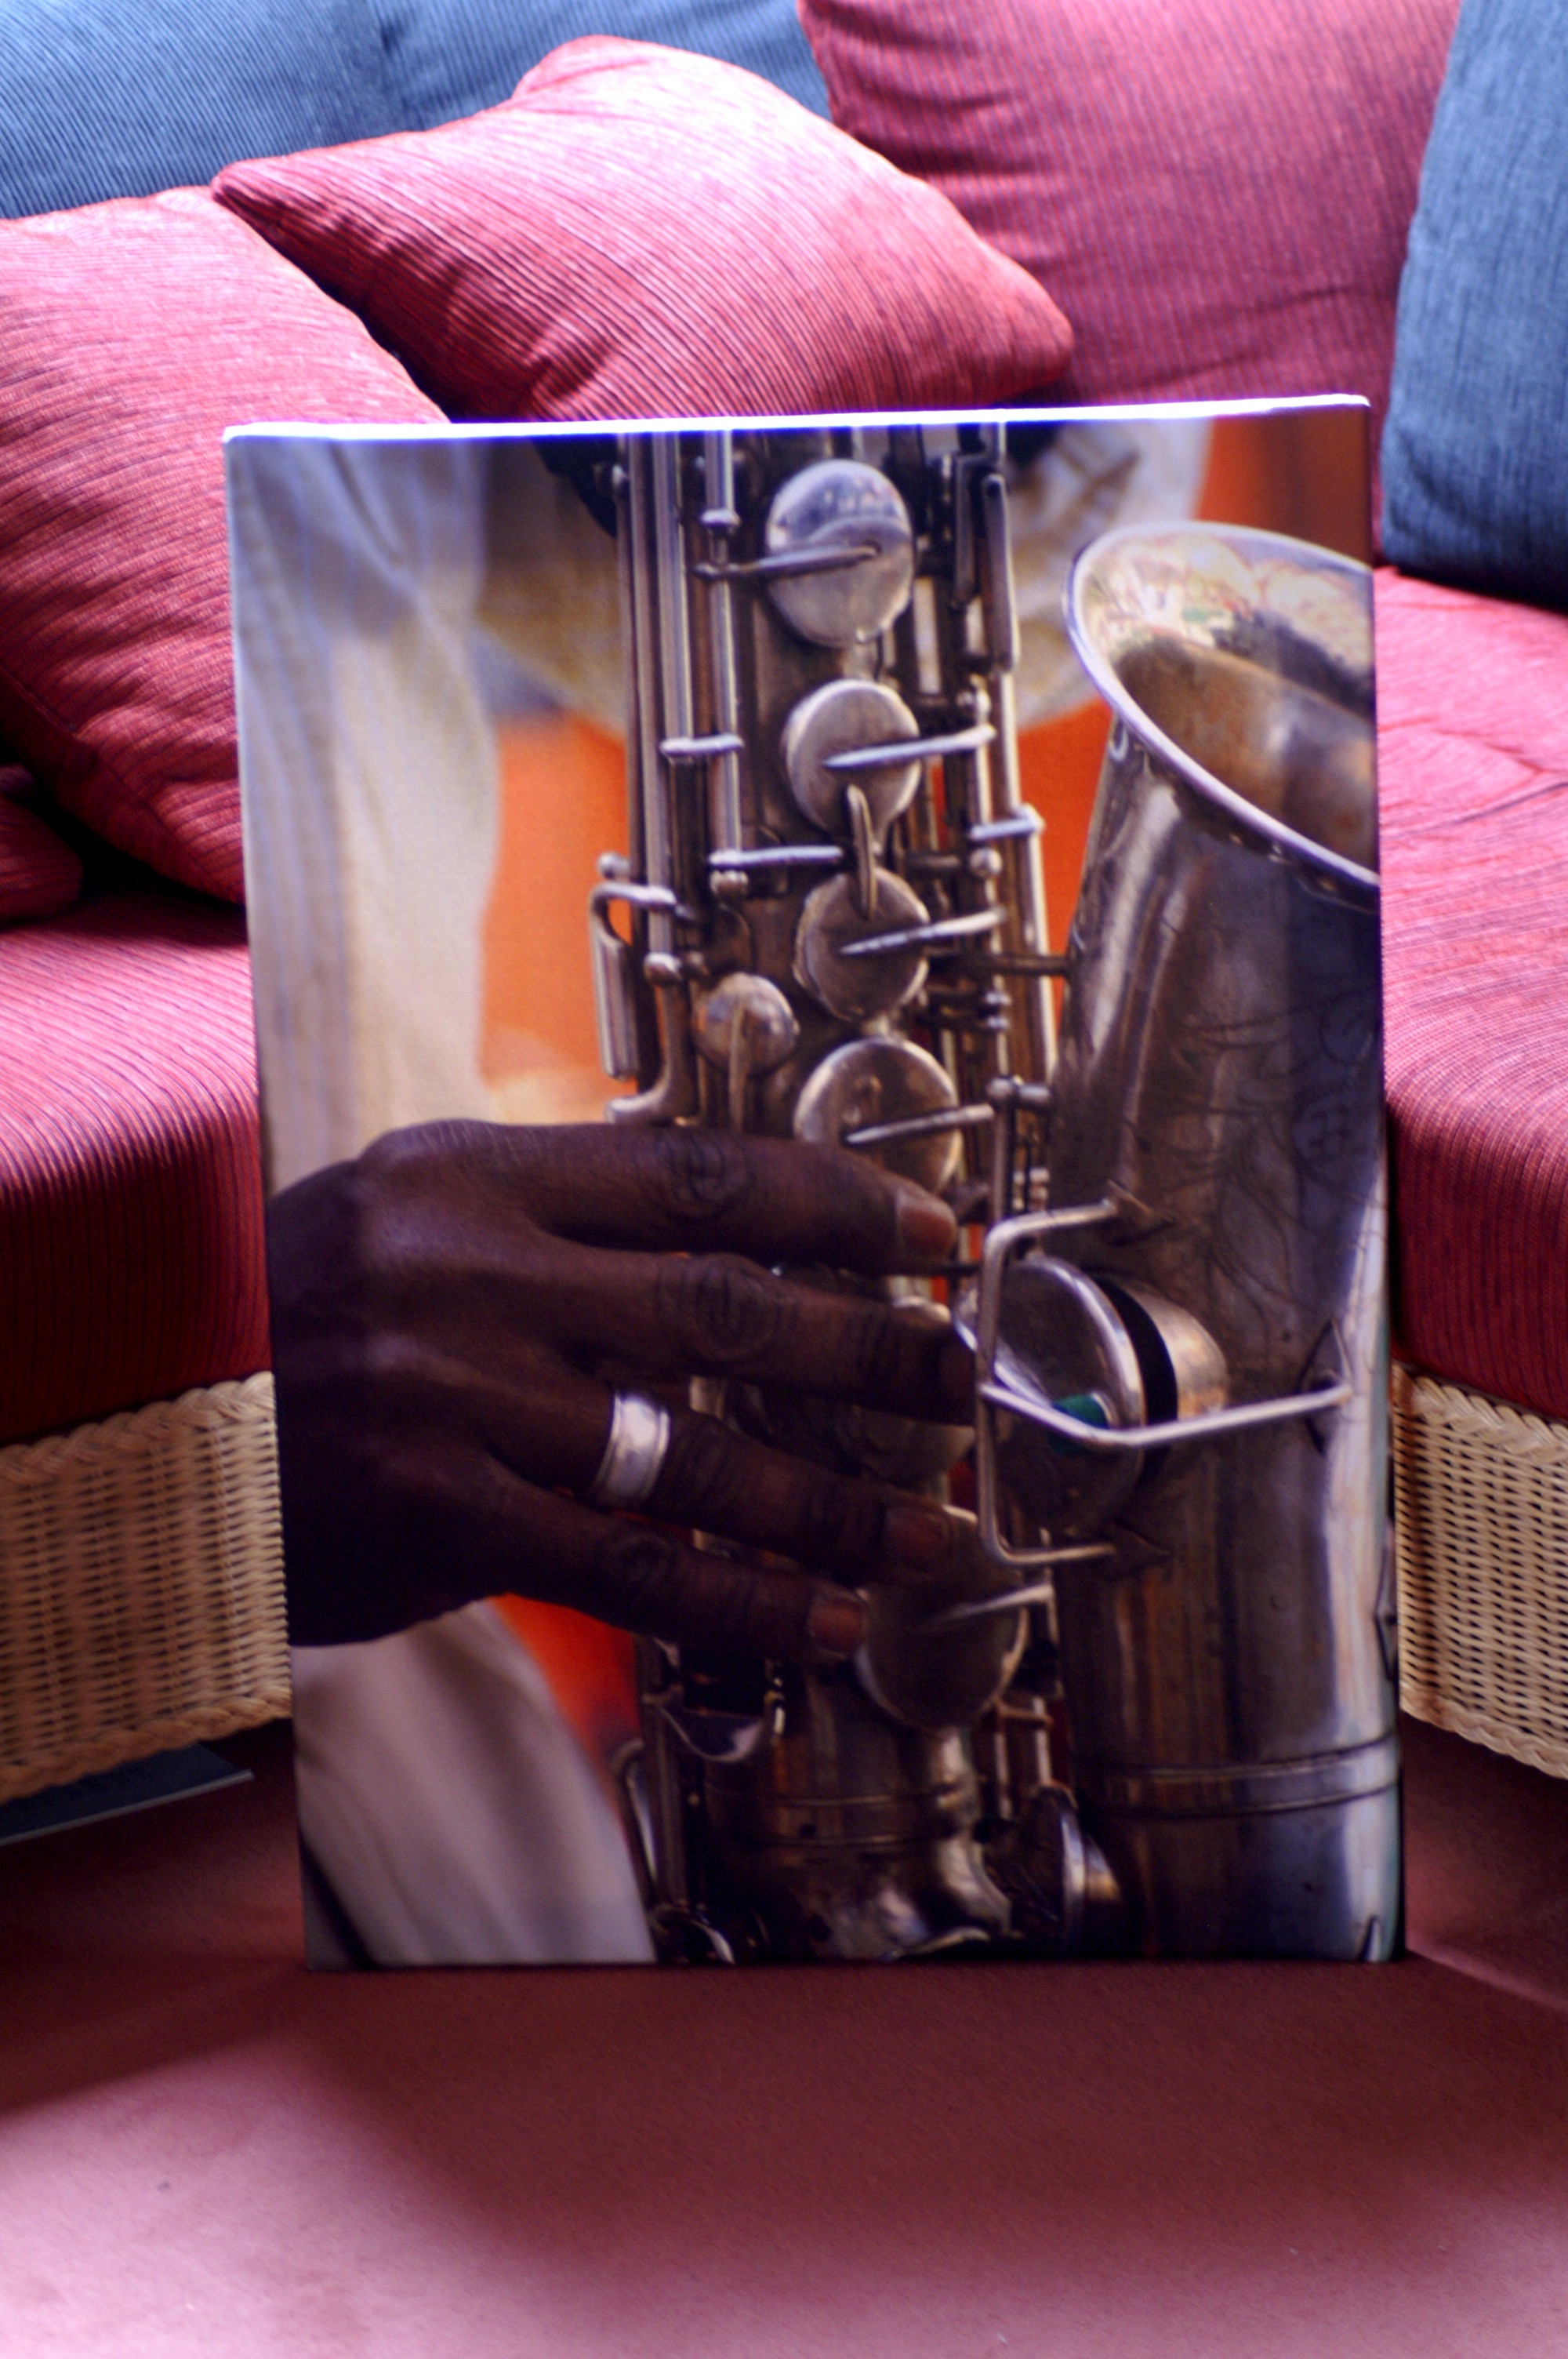 Saxophon-Spieler